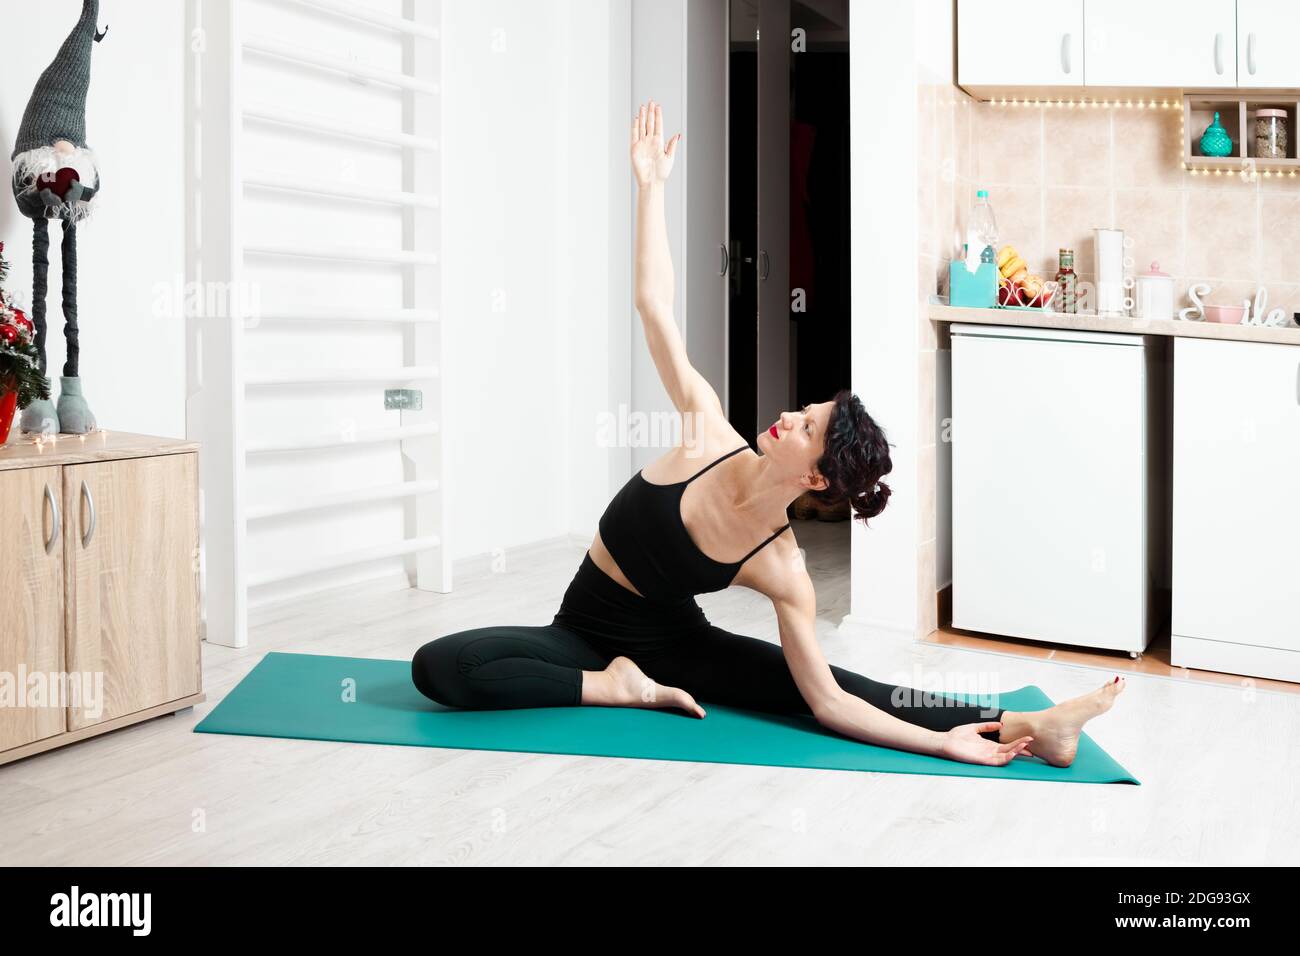 Jeune femme pratiquant le yoga dans son propre appartement et appréciant son jour Banque D'Images